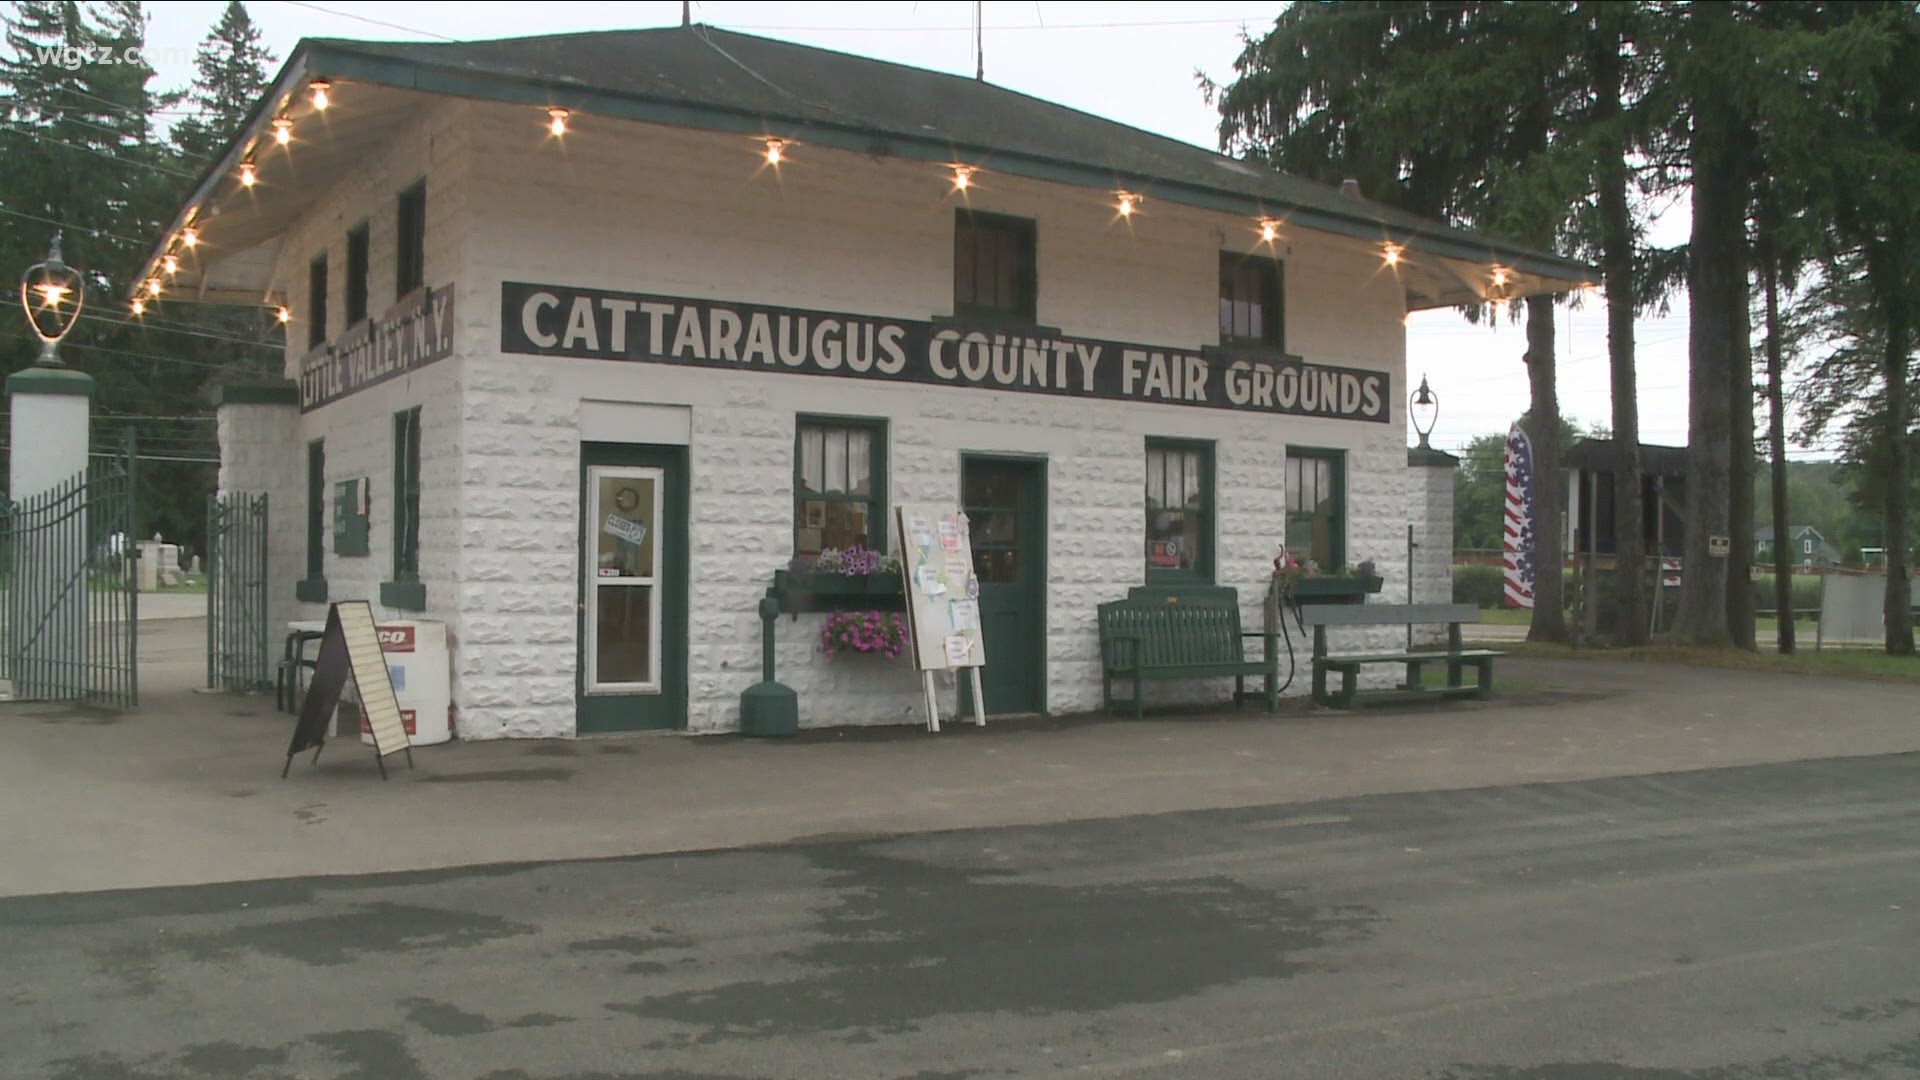 Cattaraugus County Fair returning in August